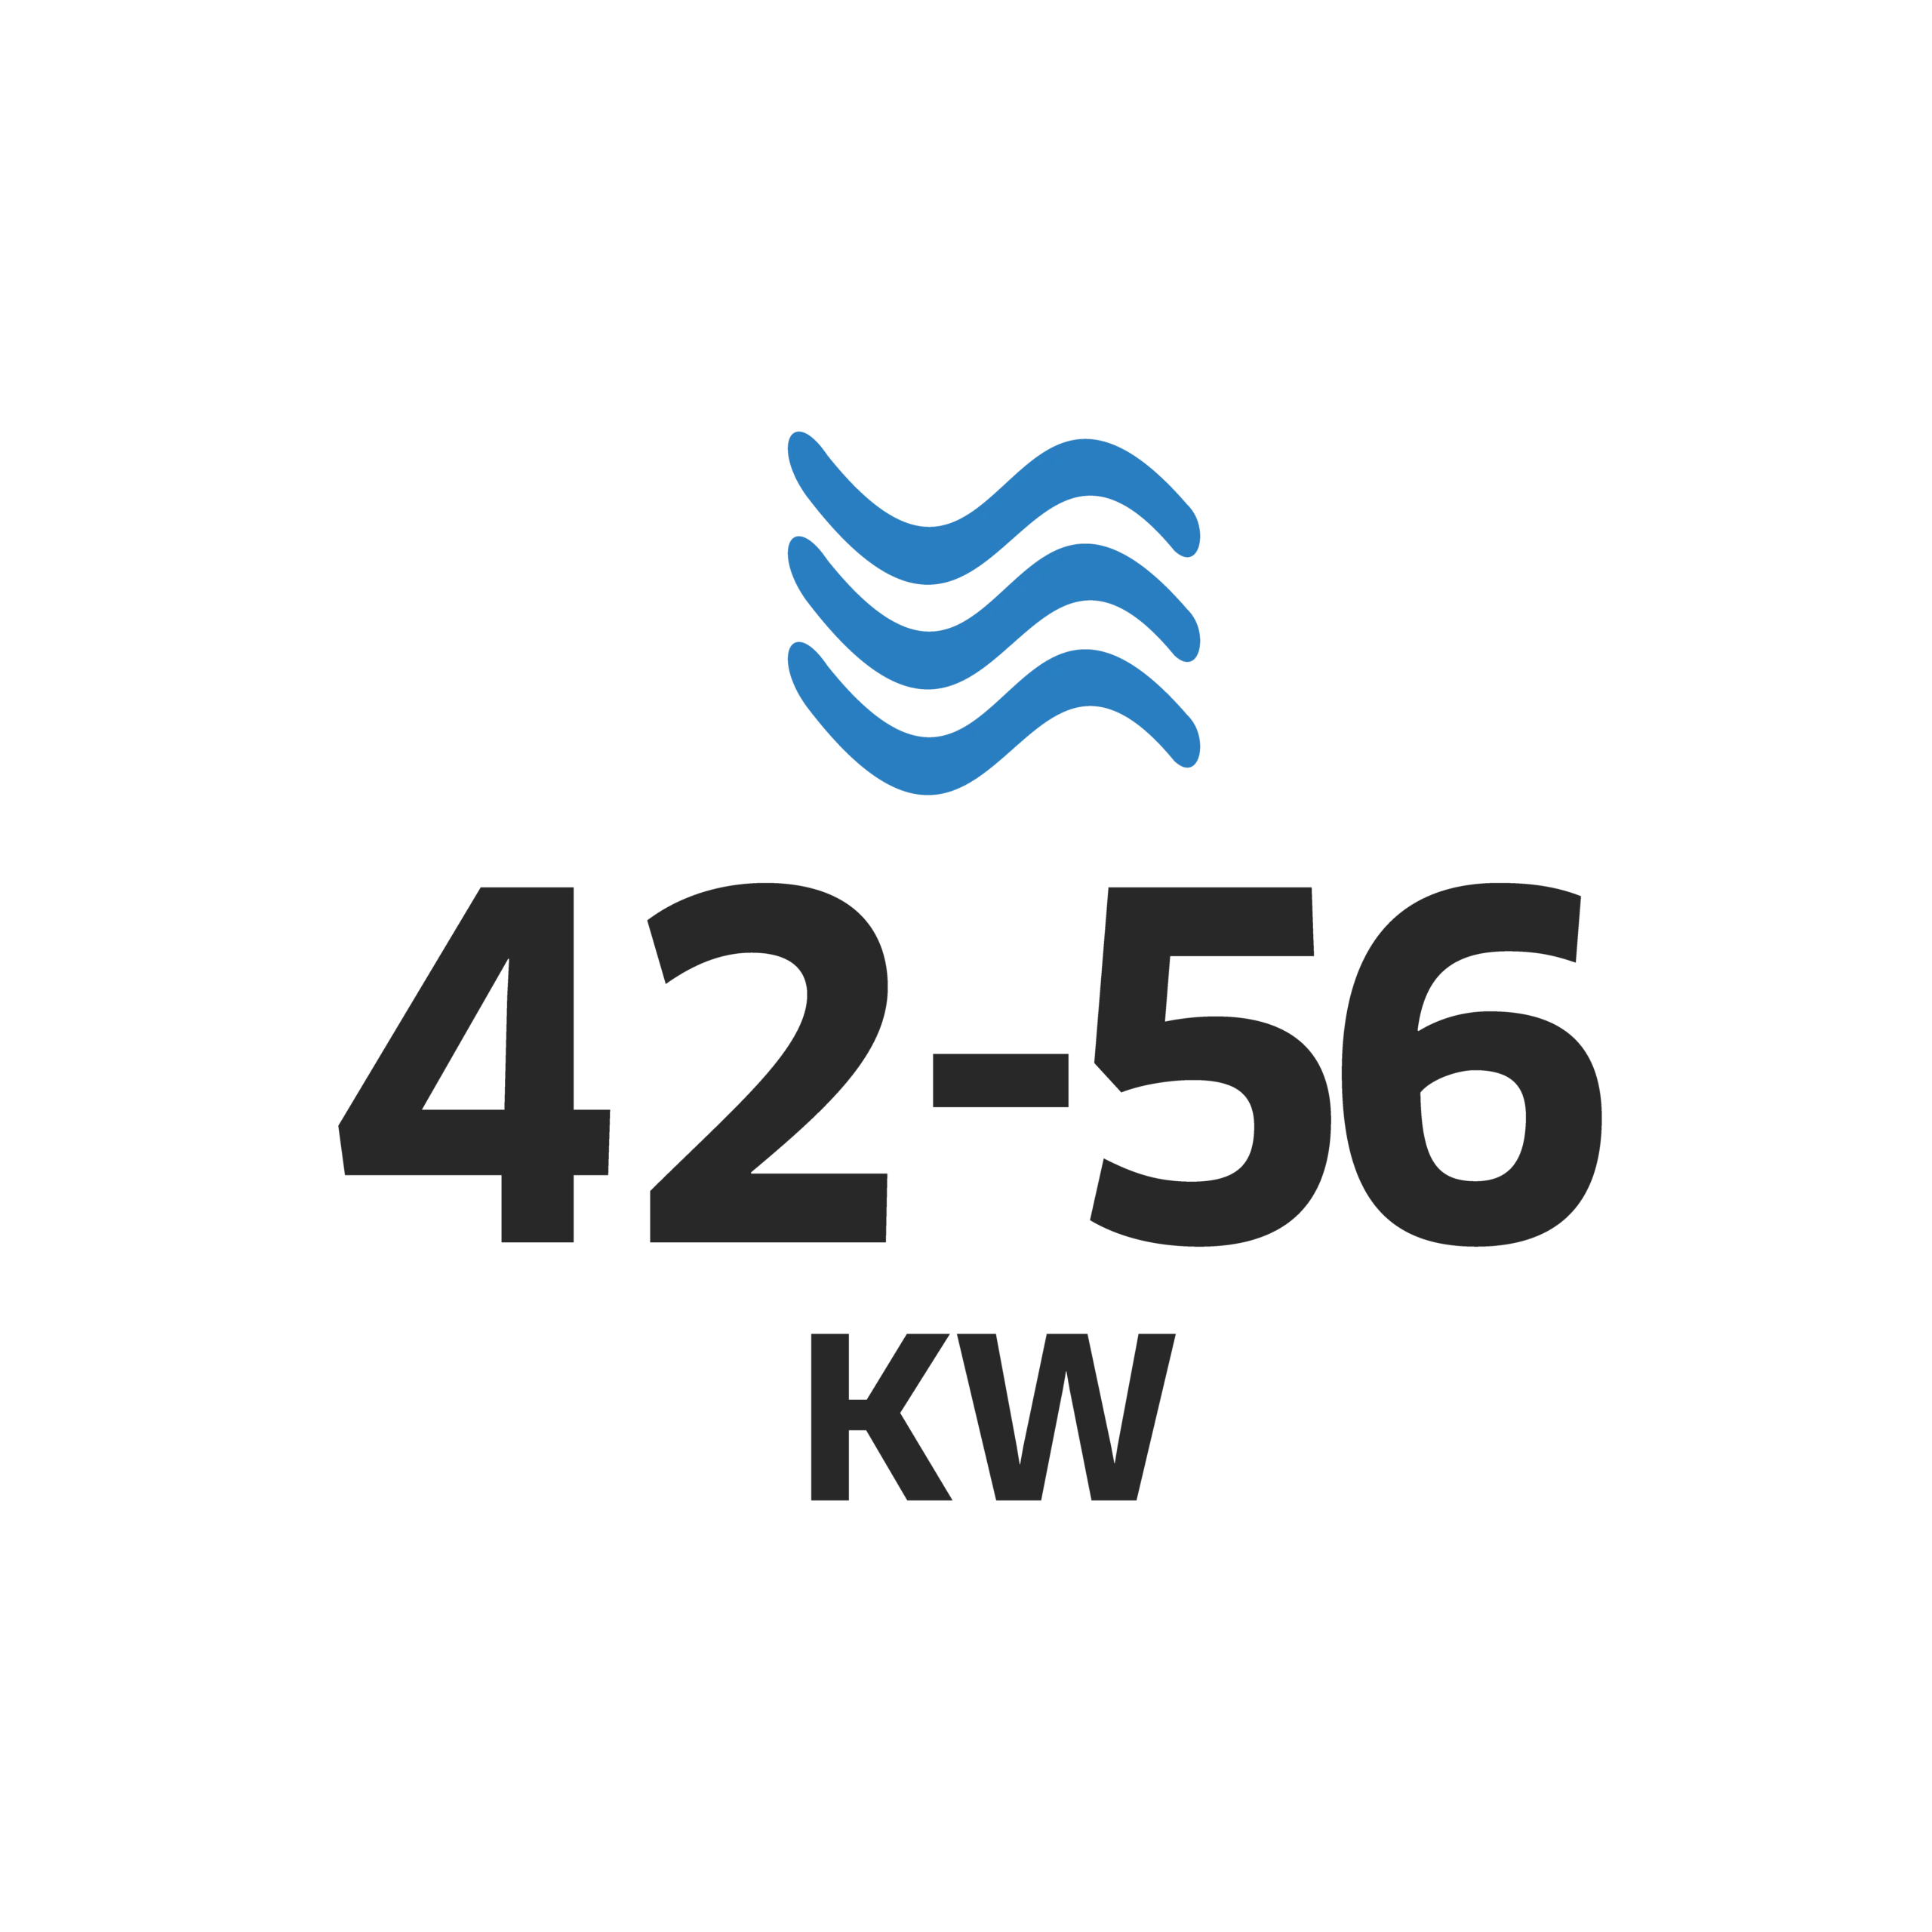 42-56kw logo